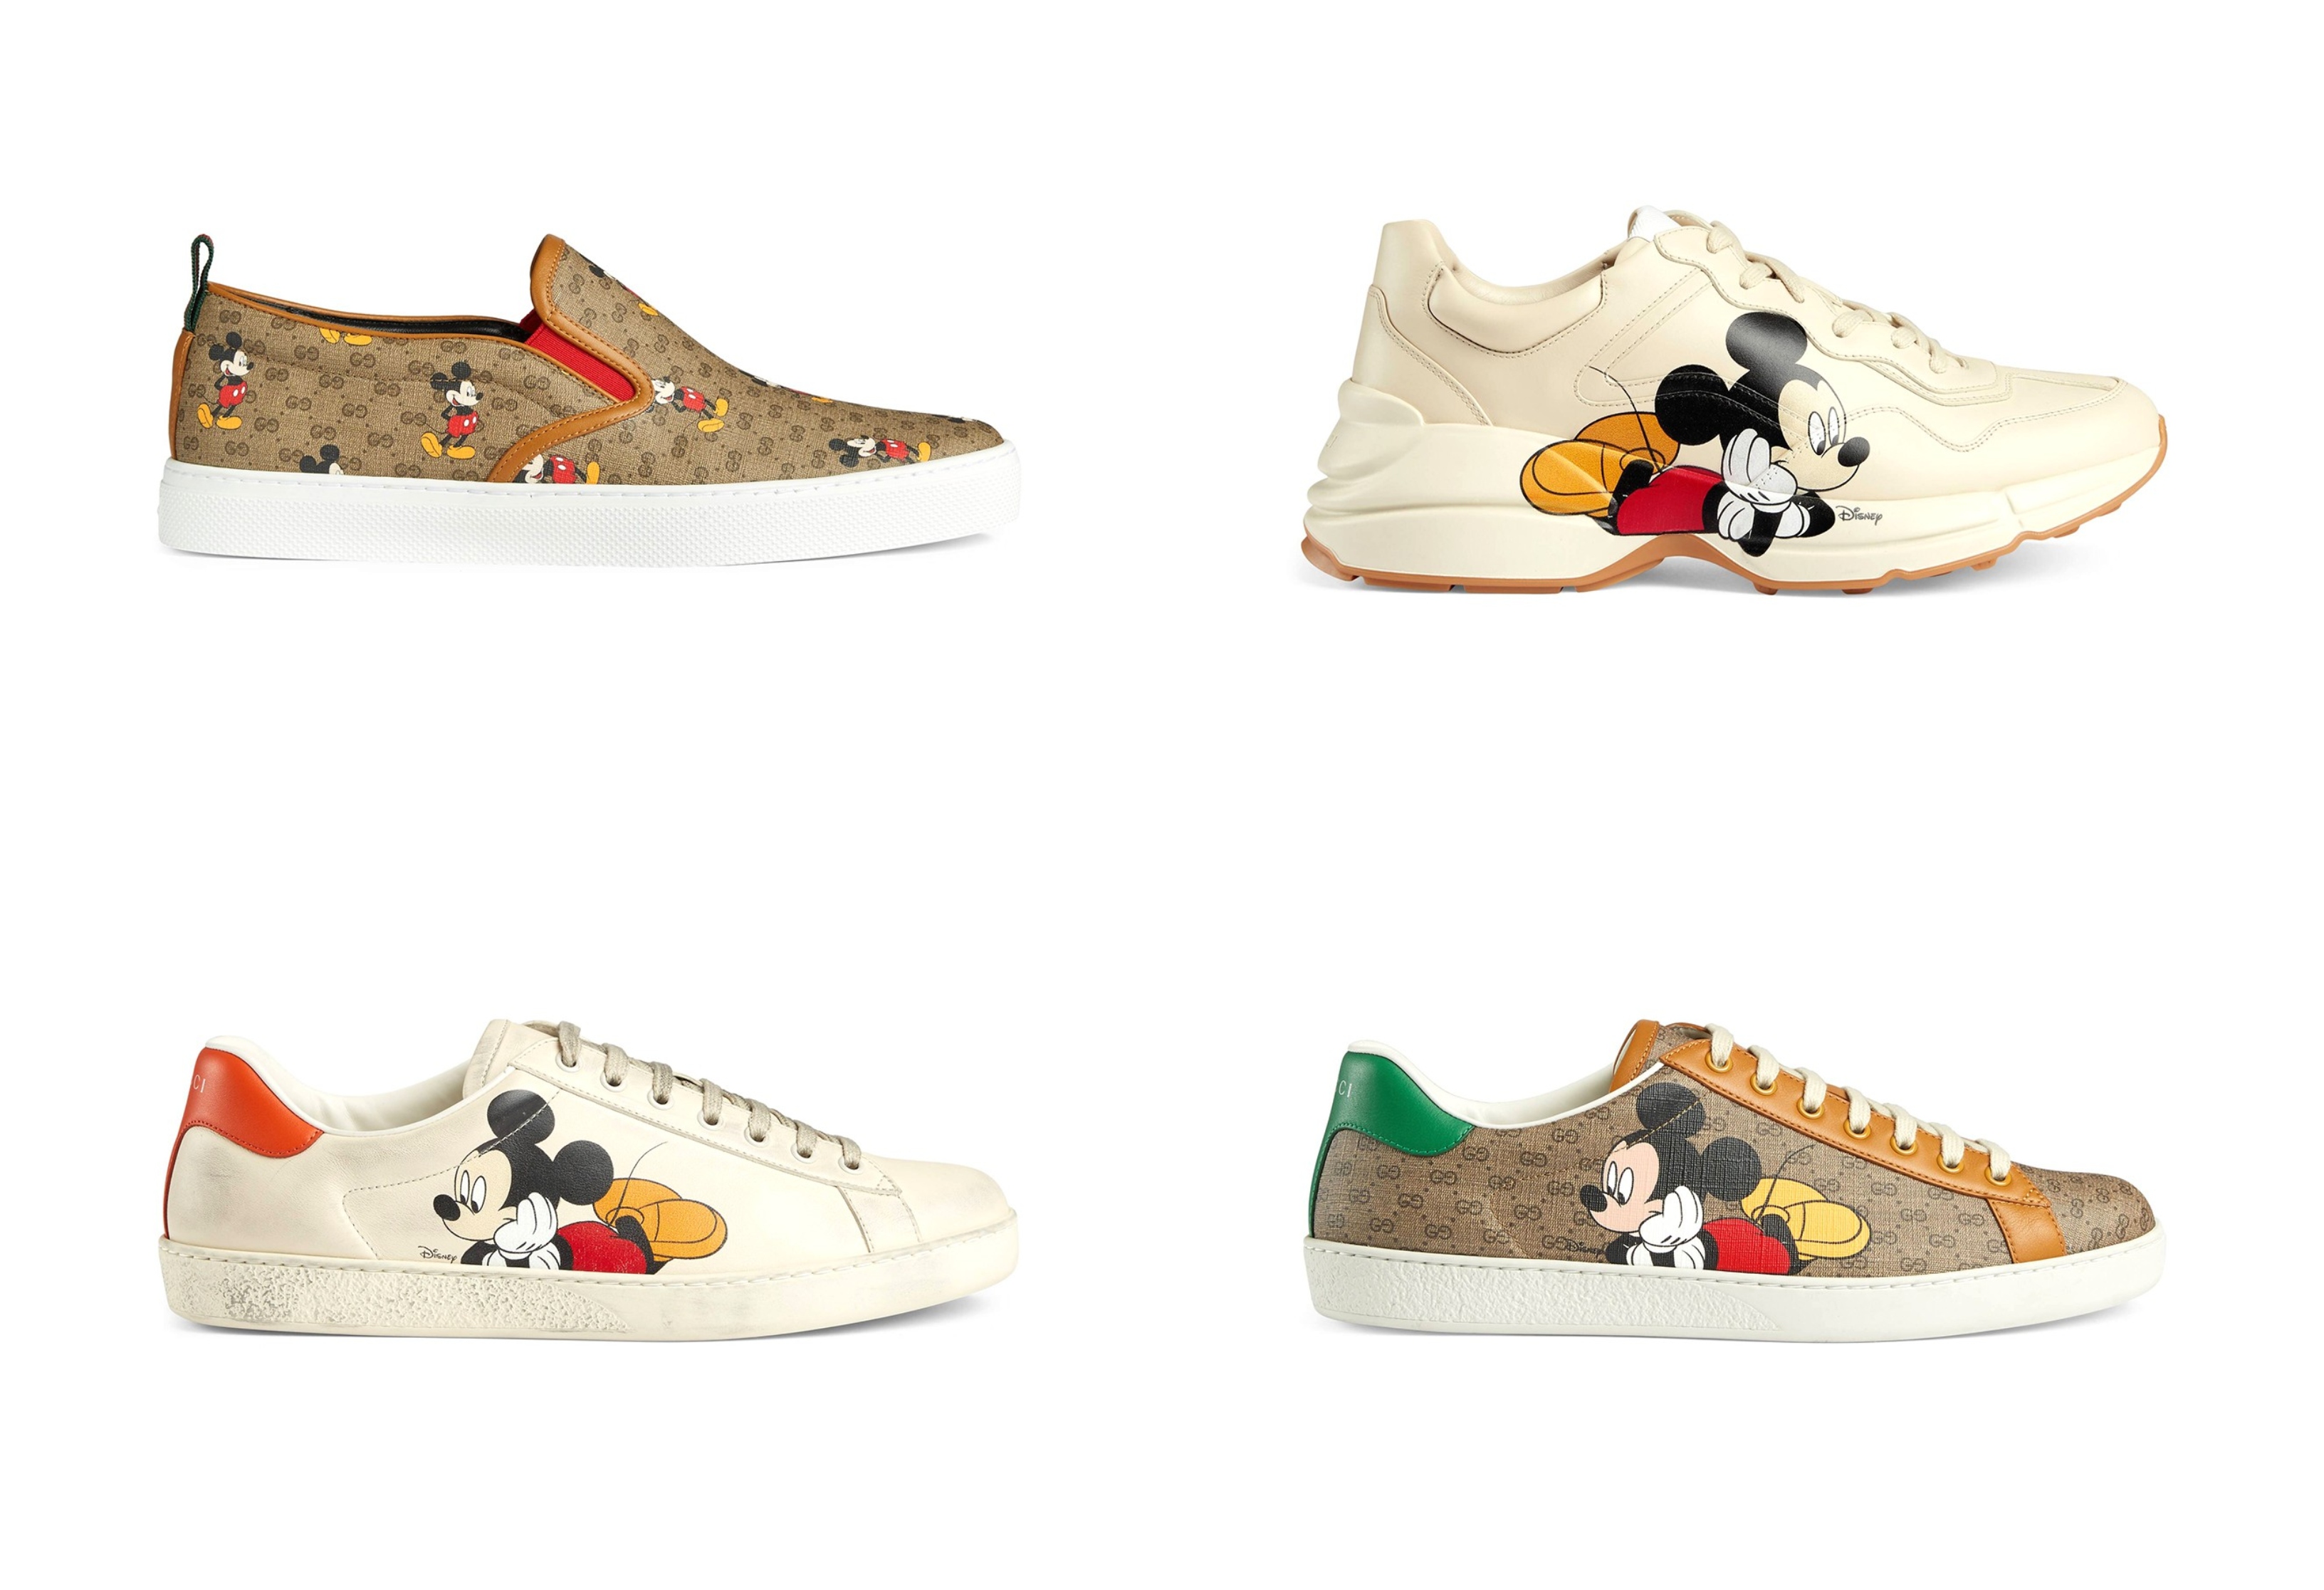 Hãy đến với các bức ảnh sneaker chuột Mickey, để choáng ngợp trong những đôi giày xinh xắn và đầy cá tính của những người yêu thời trang.